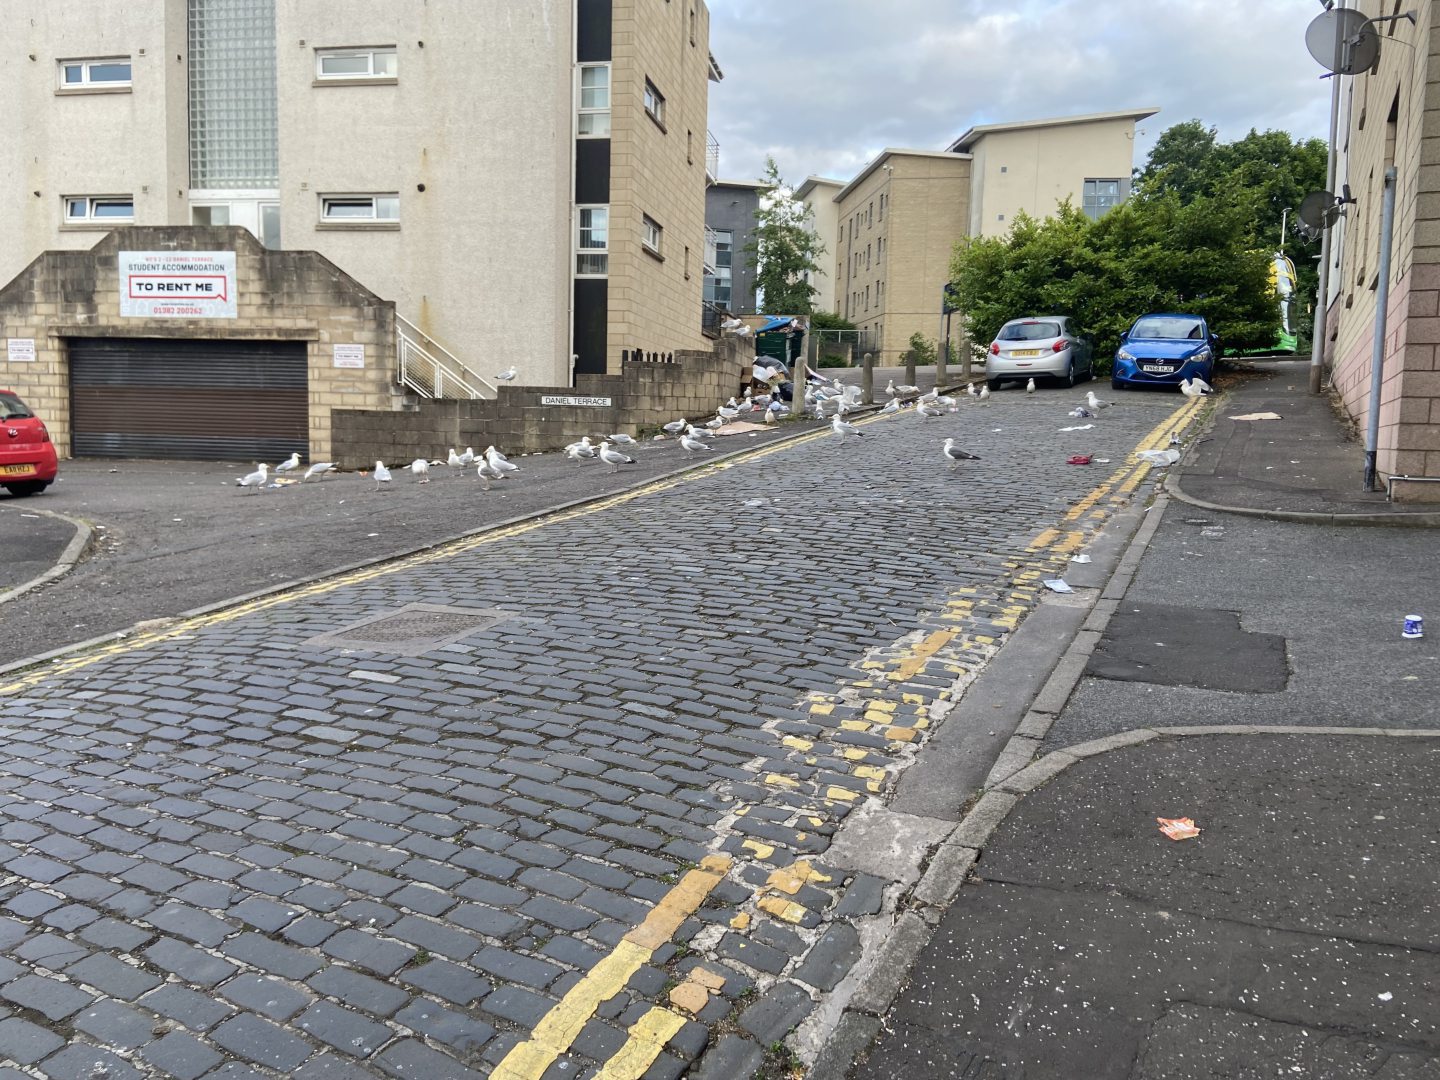 Seagulls on Daniel Street.